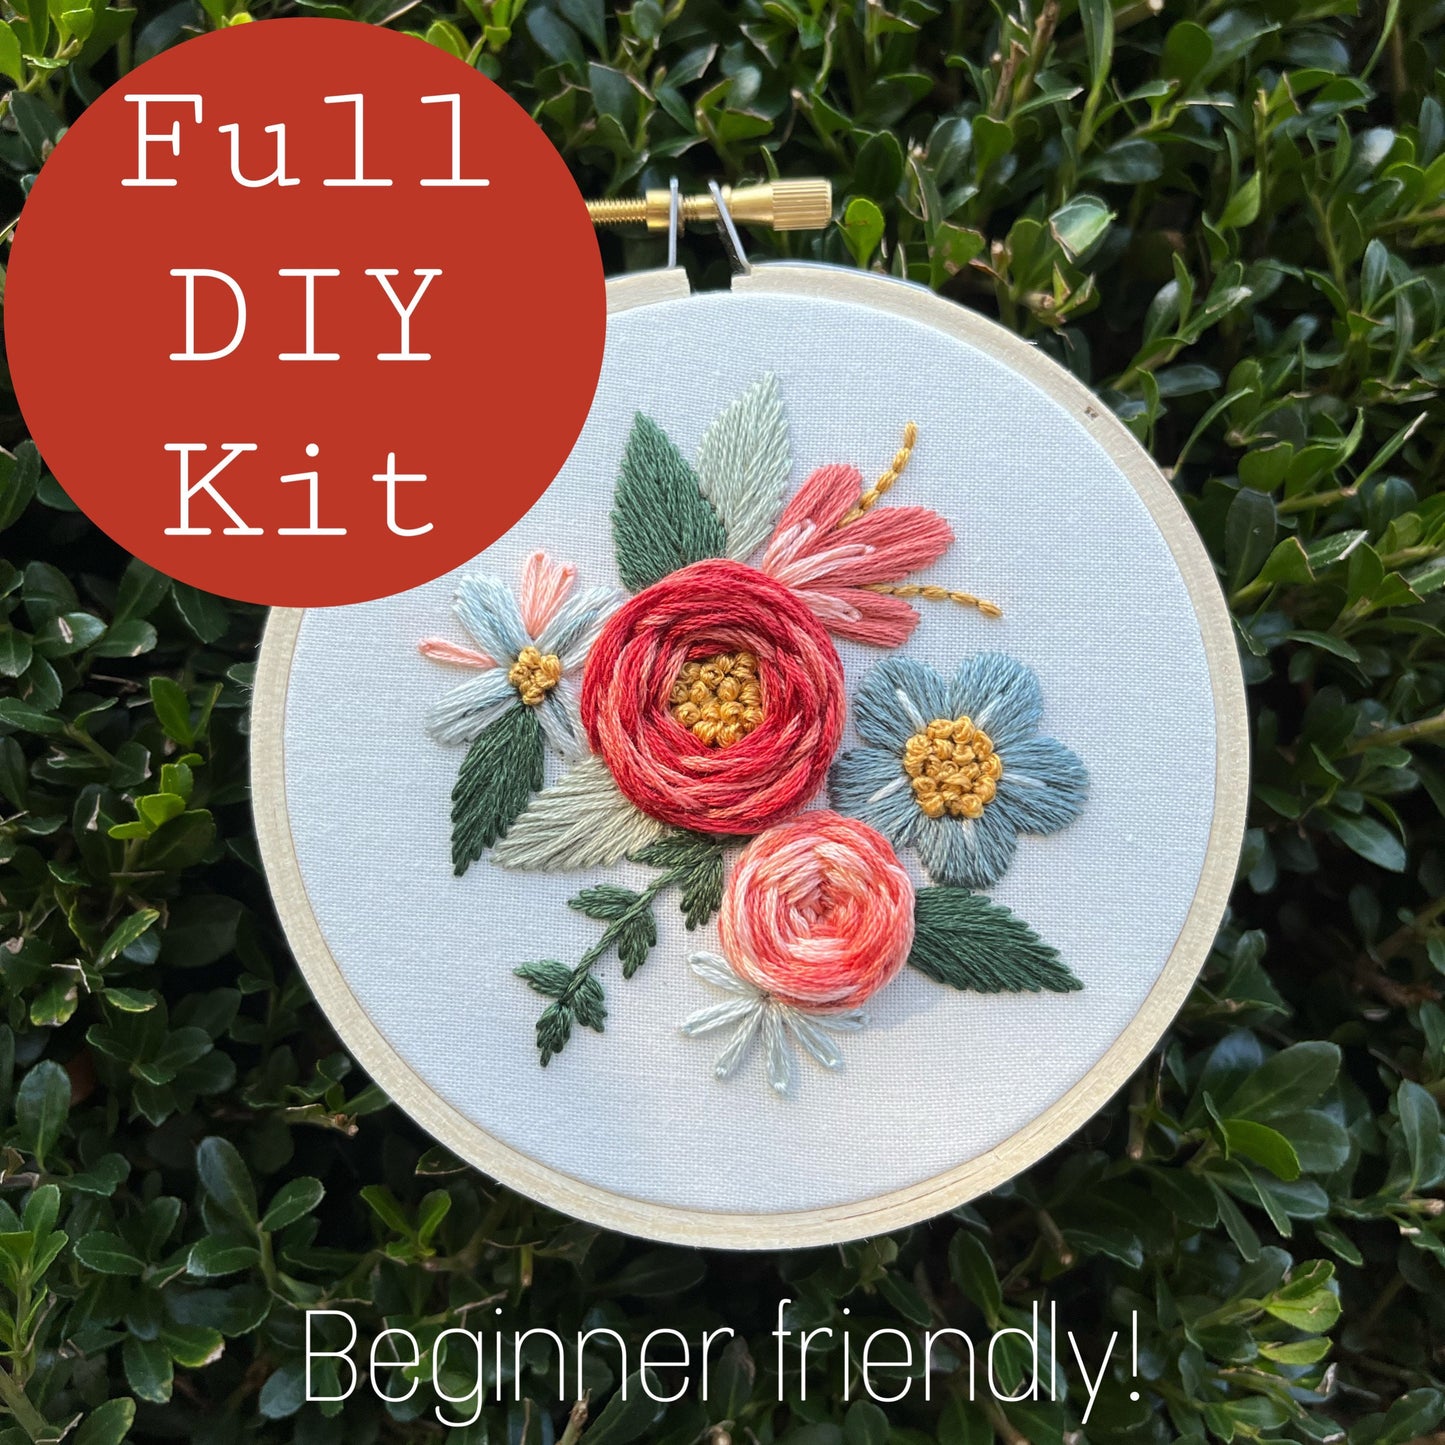 FULL KIT - Beginner's Bloom Embroidery Kit - DIY Embroidery Kit, Floral Embroidery, Embroidery Pattern